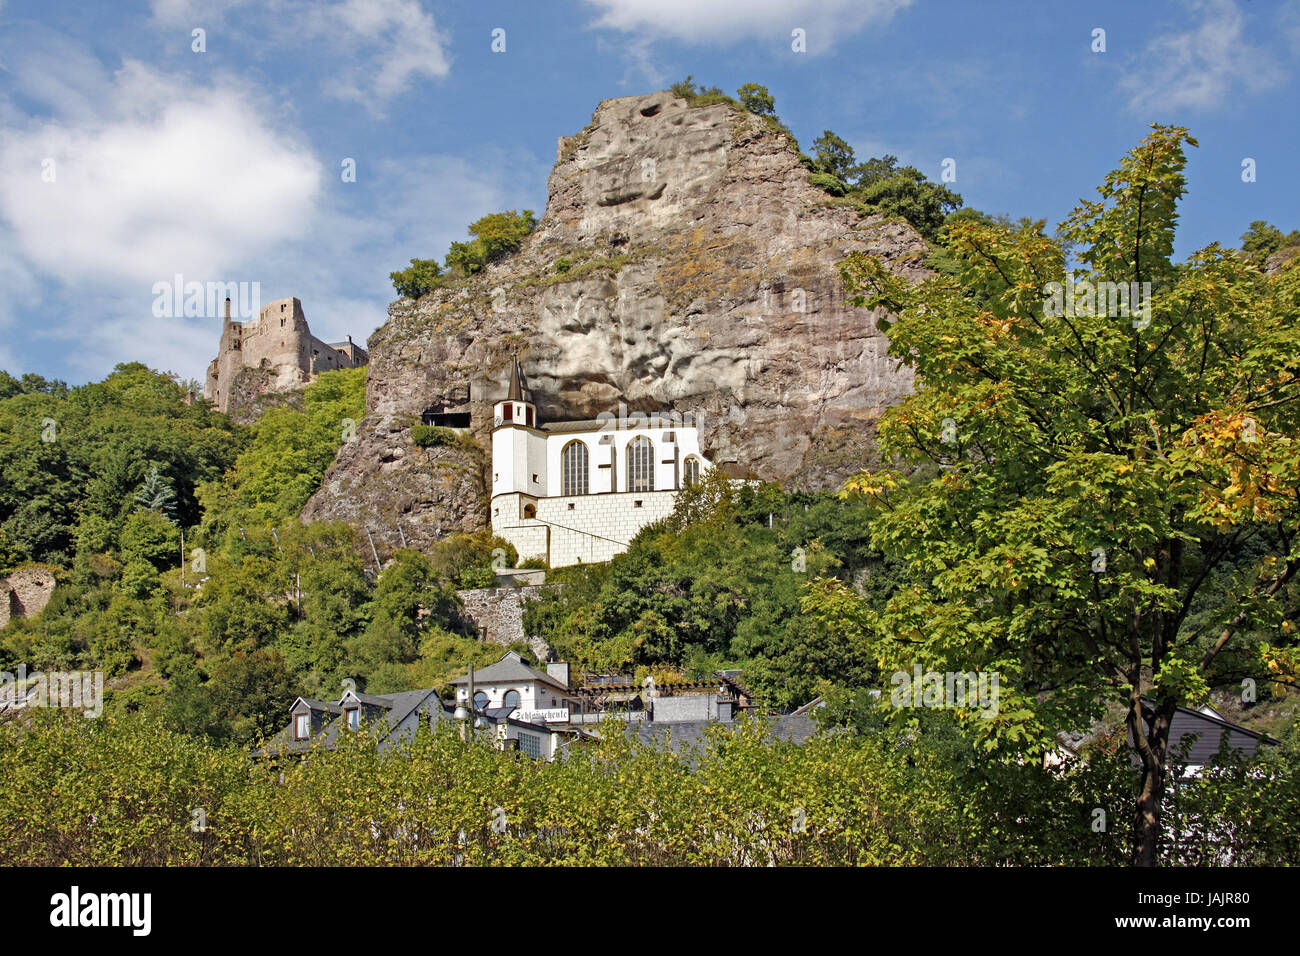 Germany,Rhineland-Palatinate,Idar-Oberstein,castle Bosselstein,rock church,lock,castle,outside,rocks,church,rock church,church,steeple, Stock Photo